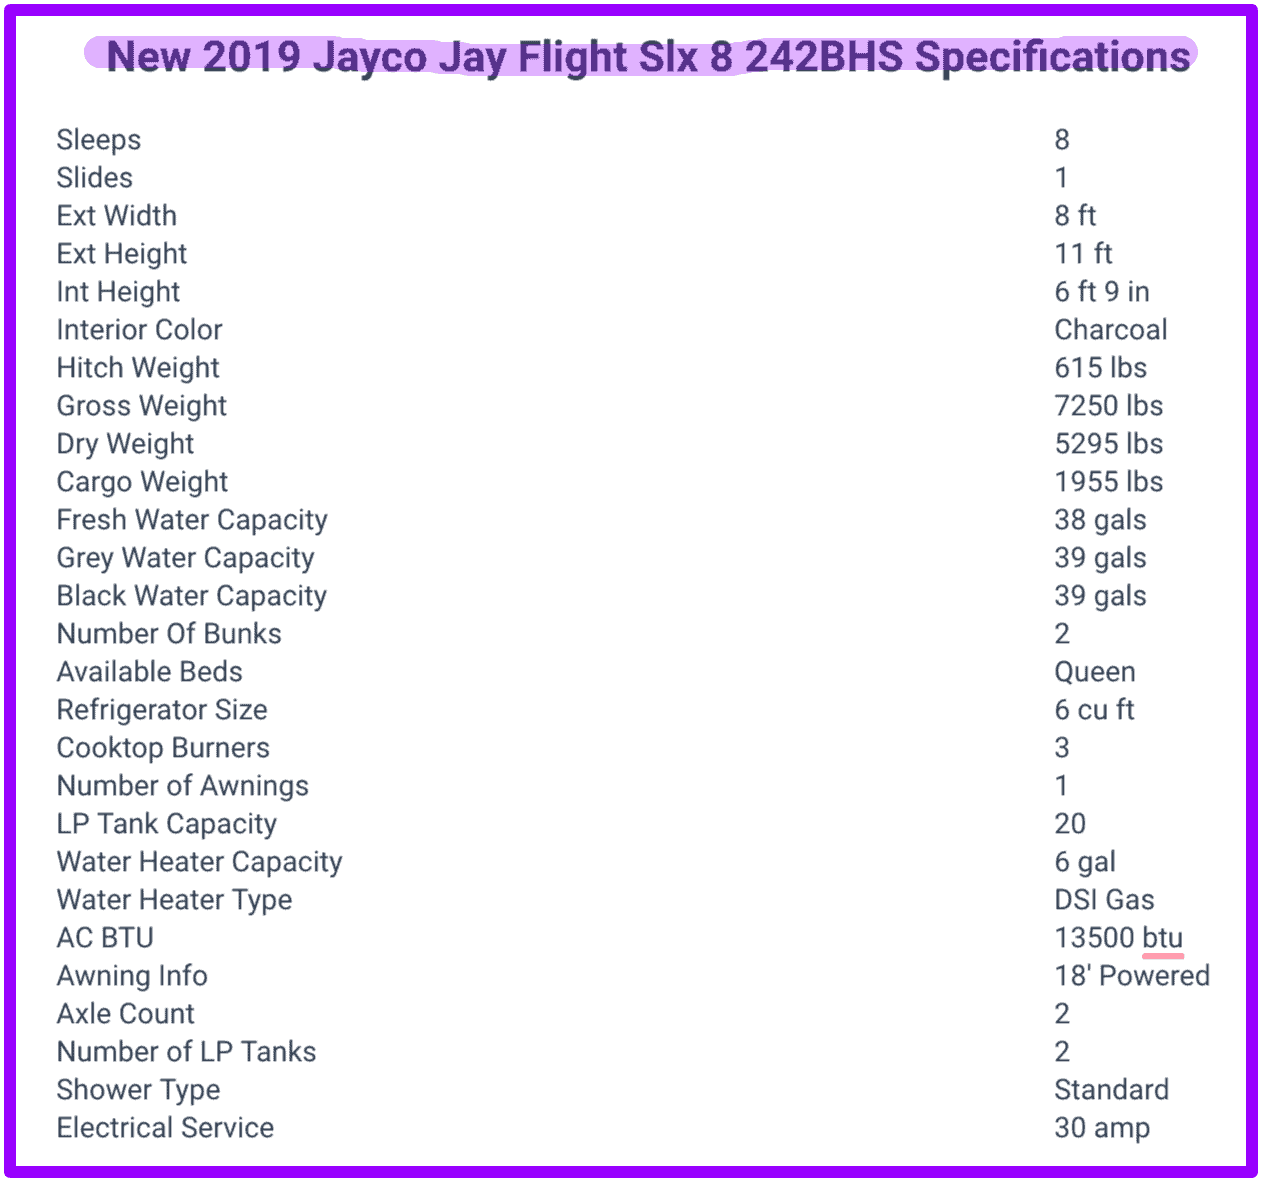 New 2019 Jayco Jay Flight Slx 8 242BHS specifications